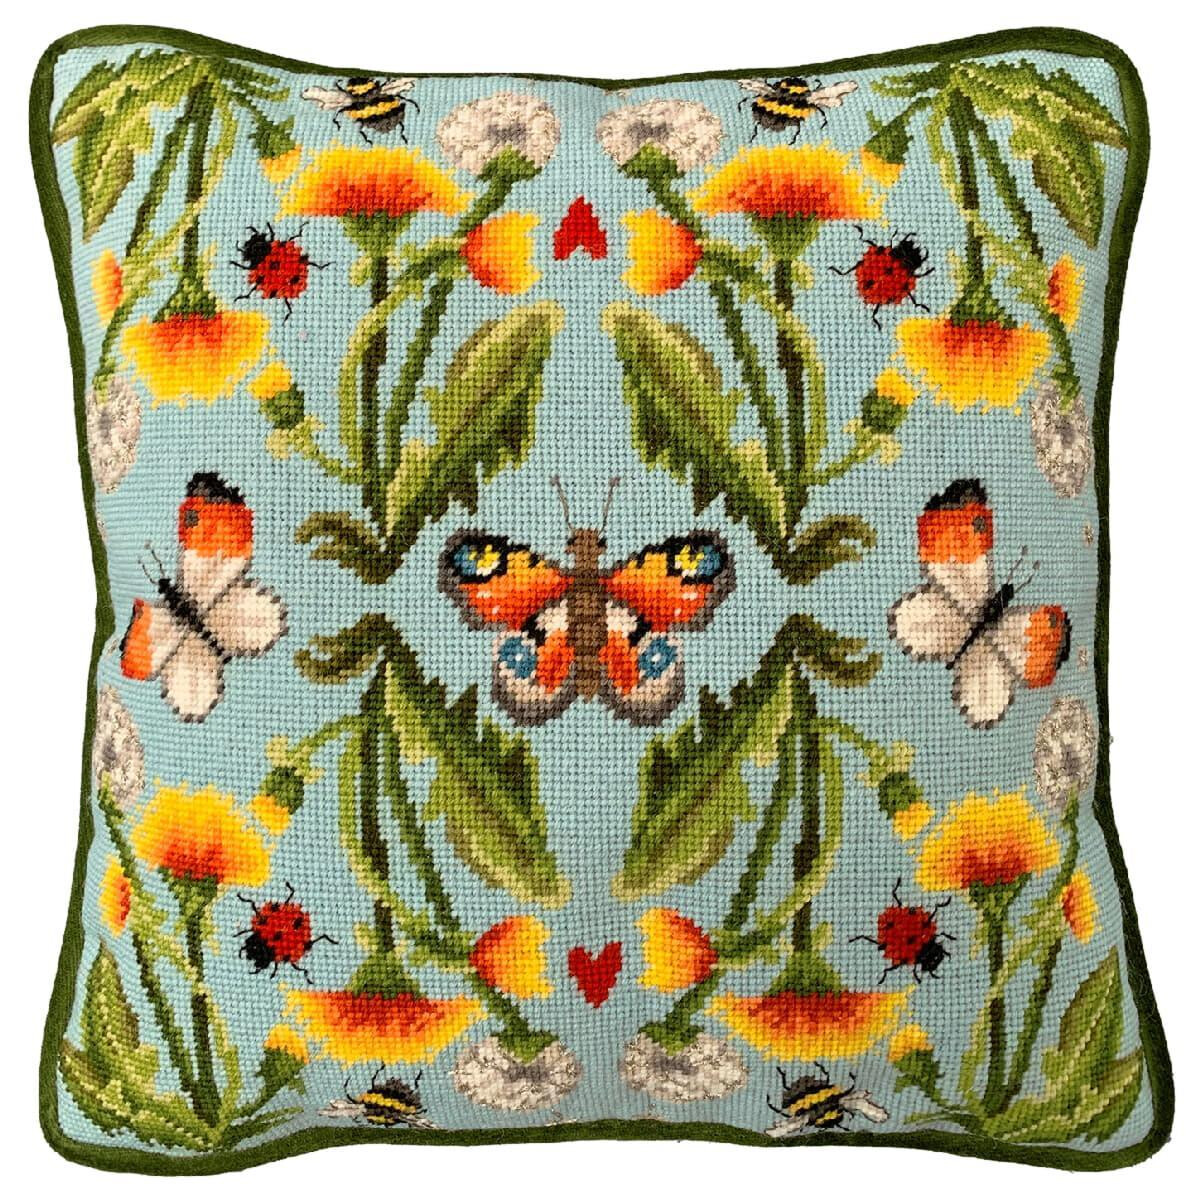 Красочная подушка в наборе для вышивания от Bothy Threads...